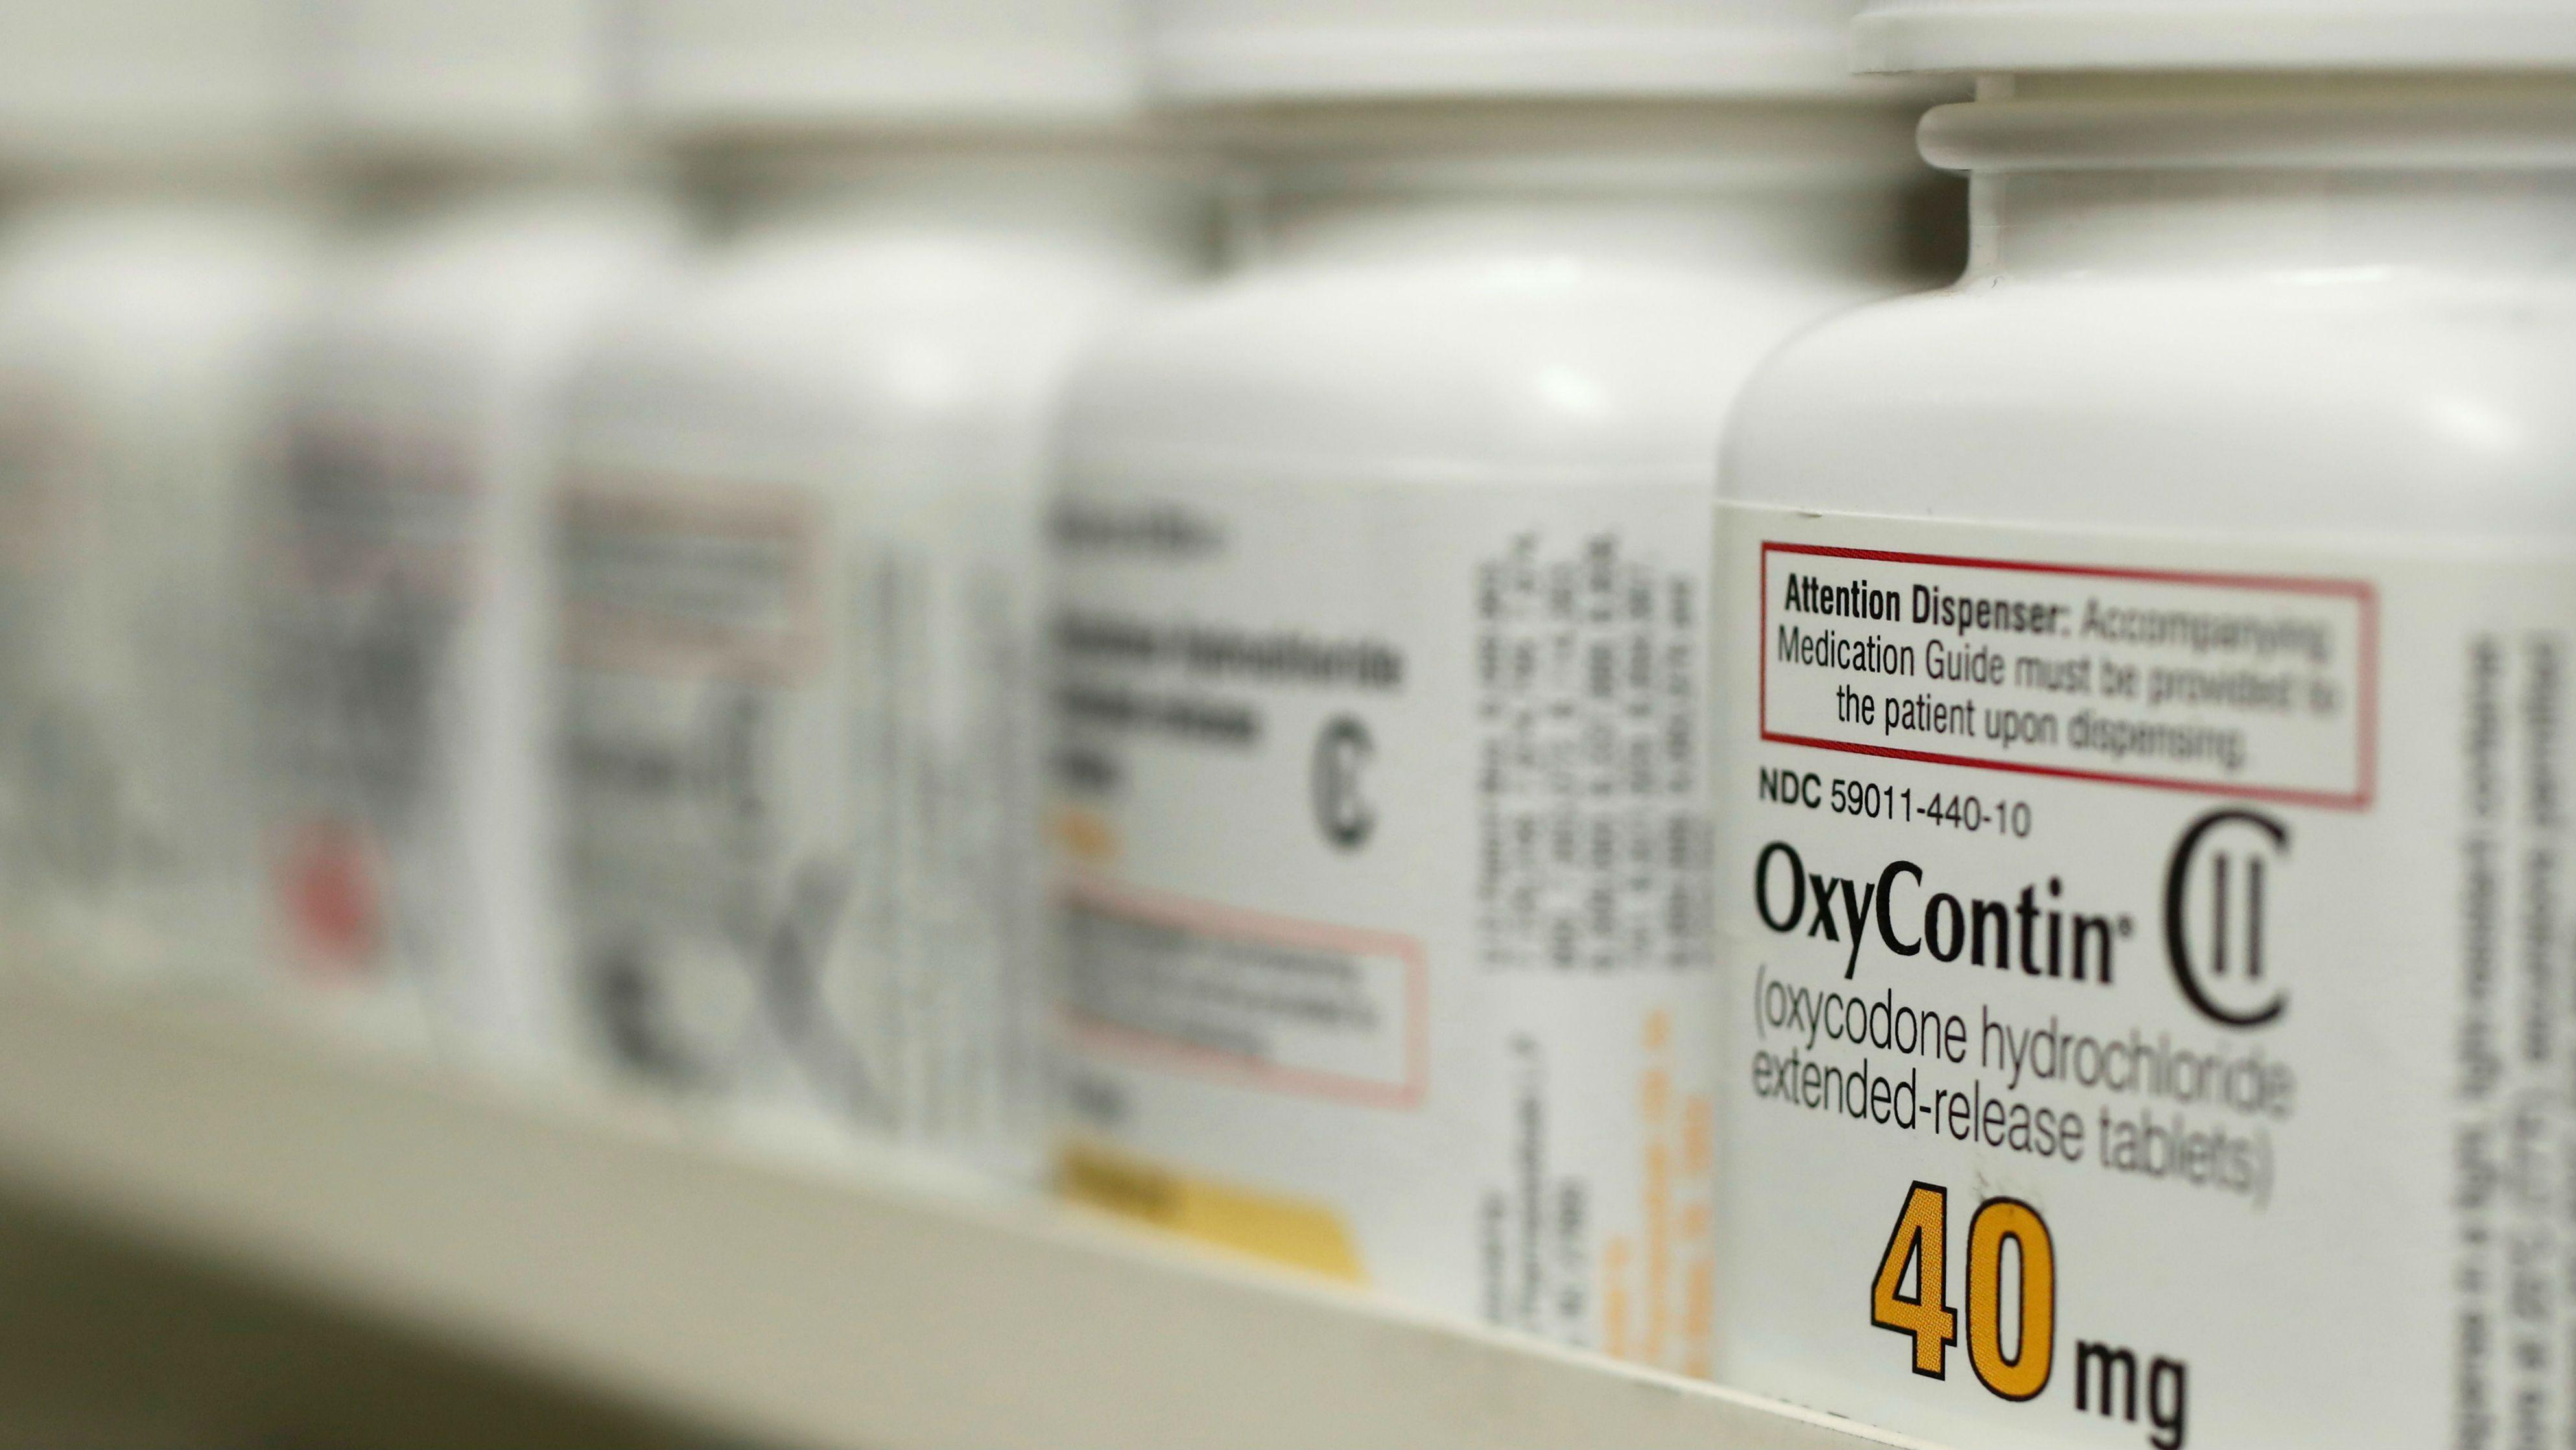 FDA распорядилось изъять из продажи опиоидный анальгетик из-за риска злоупотребления